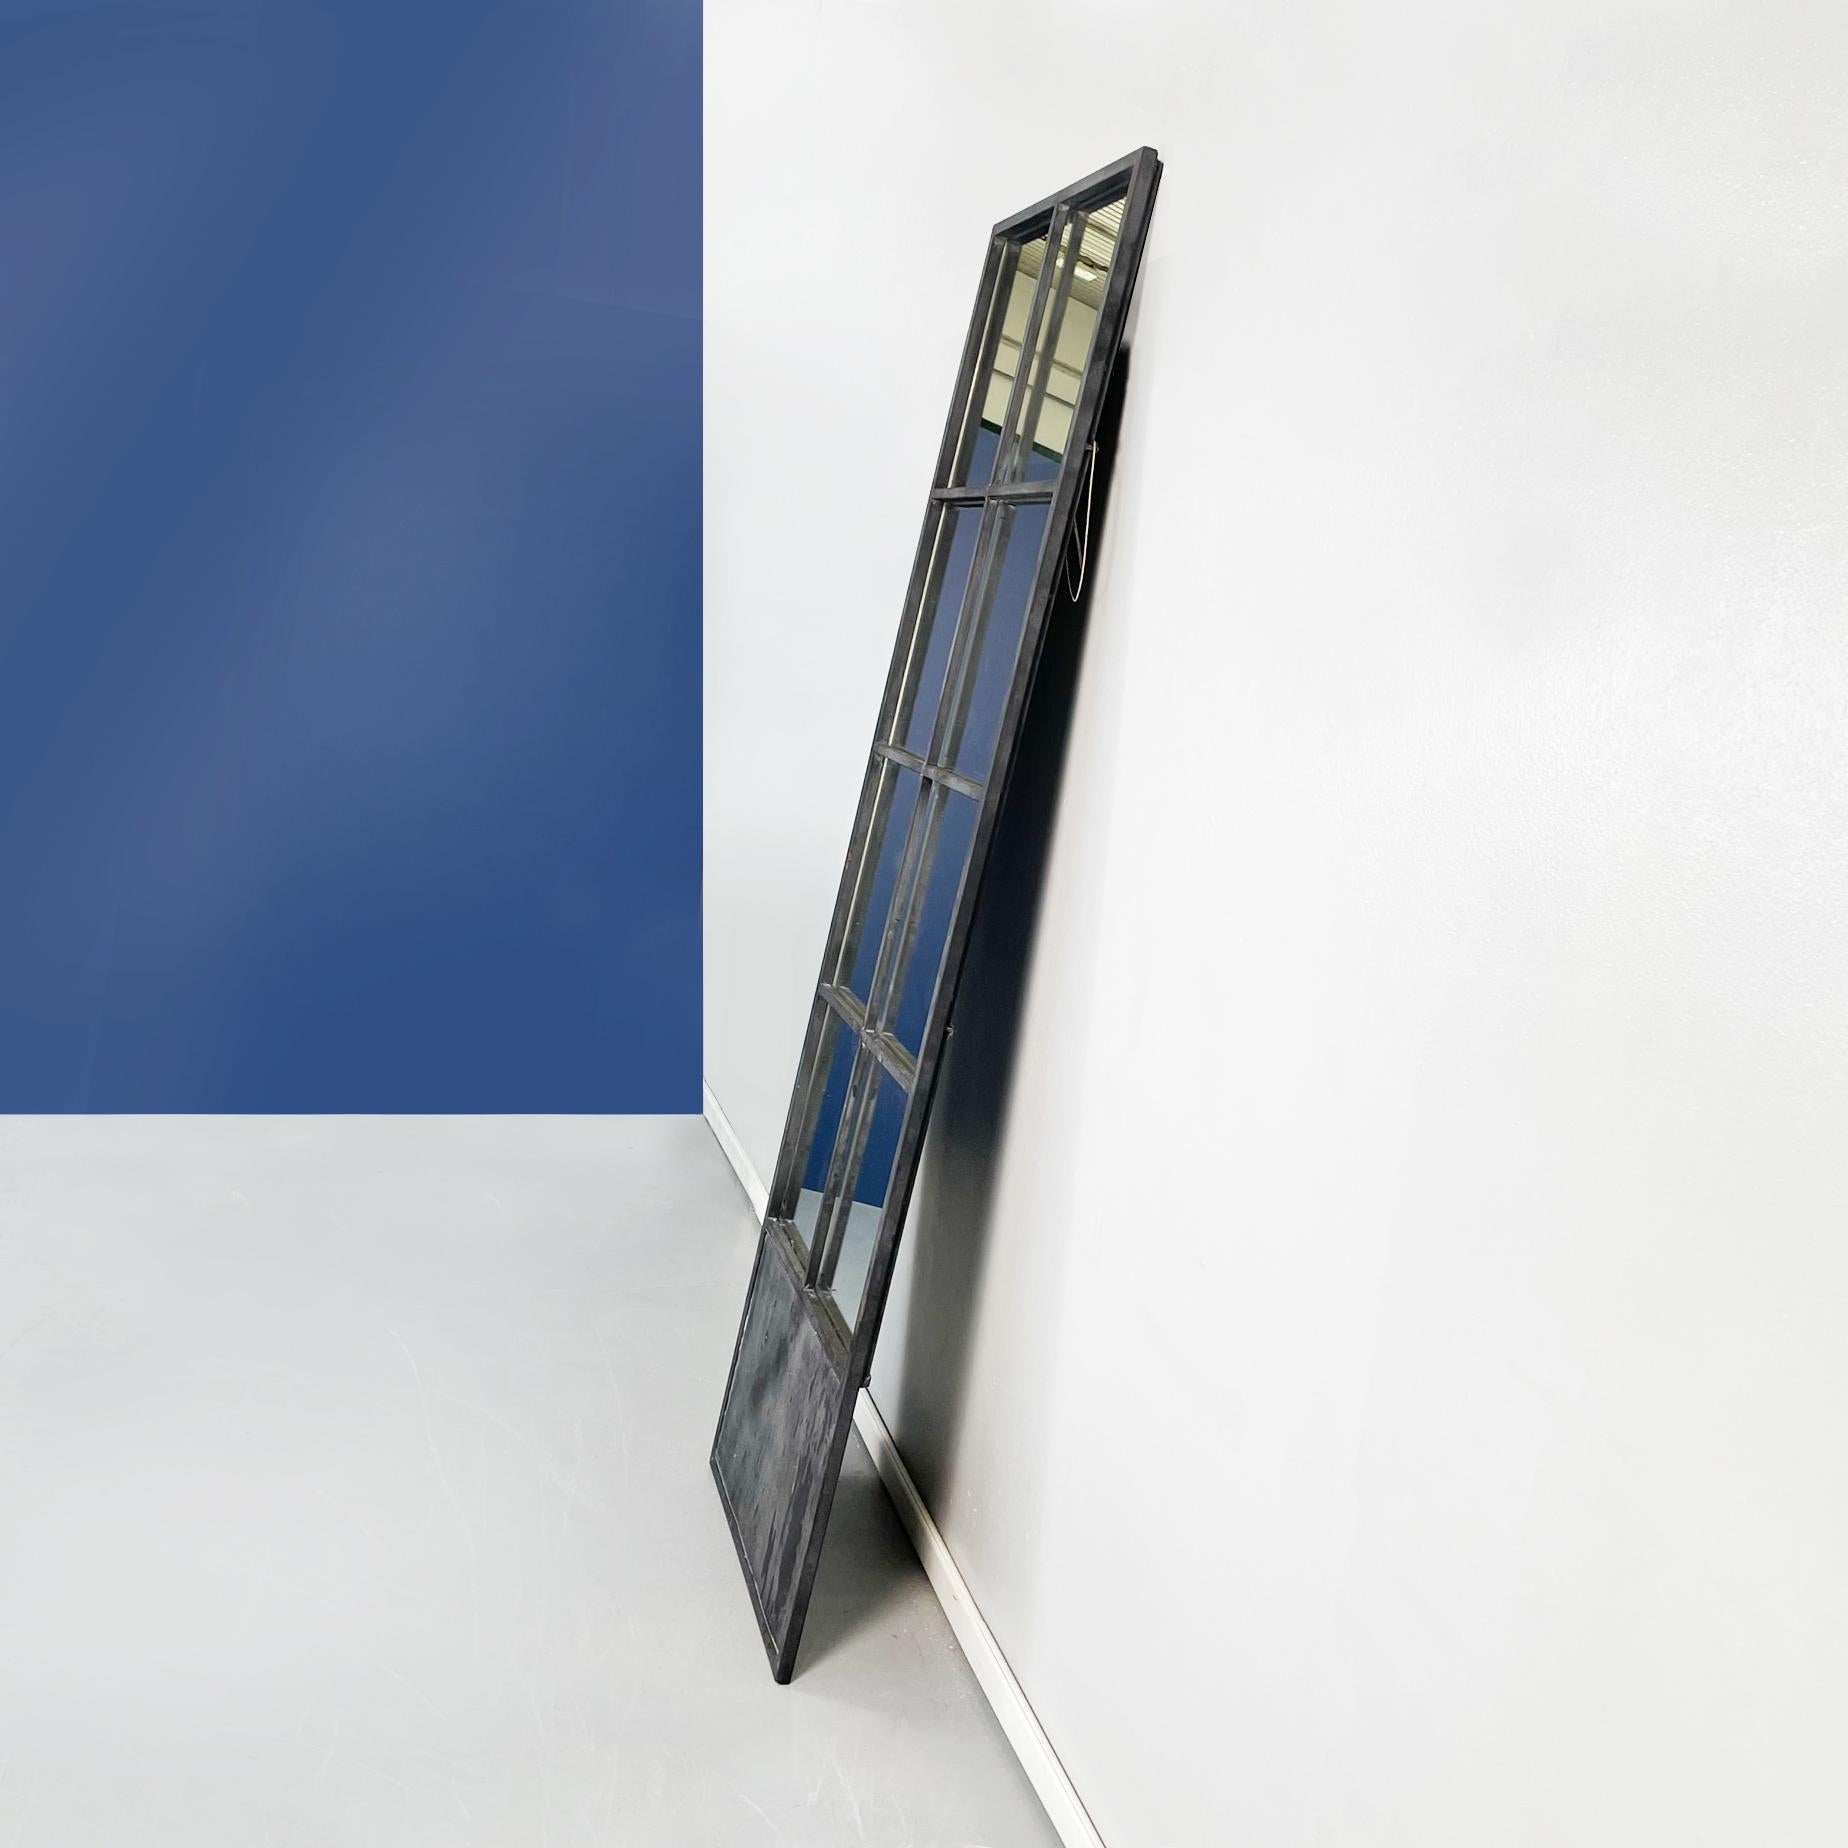 Italienischer moderner hochrechteckiger Spiegel aus schwarzem Metall, 1990er Jahre
Rechteckiger Spiegel mit schwarz lackierter Eisenstruktur. Der Spiegel ist durch Stäbe mit quadratischem Querschnitt in 8 Teile unterteilt. Im unteren Teil des